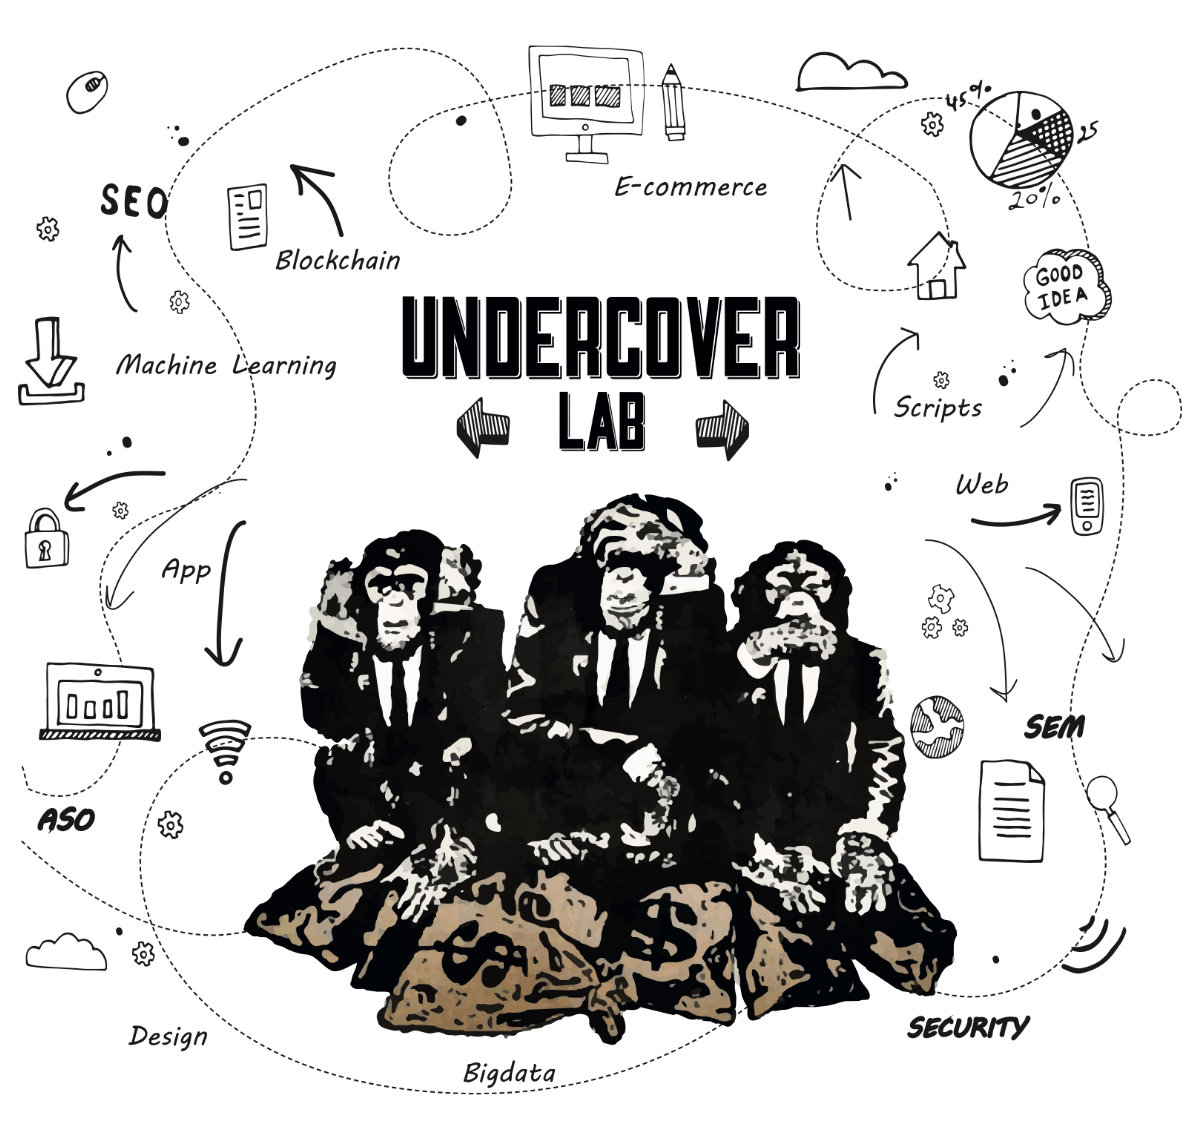 (c) Undercoverlab.com